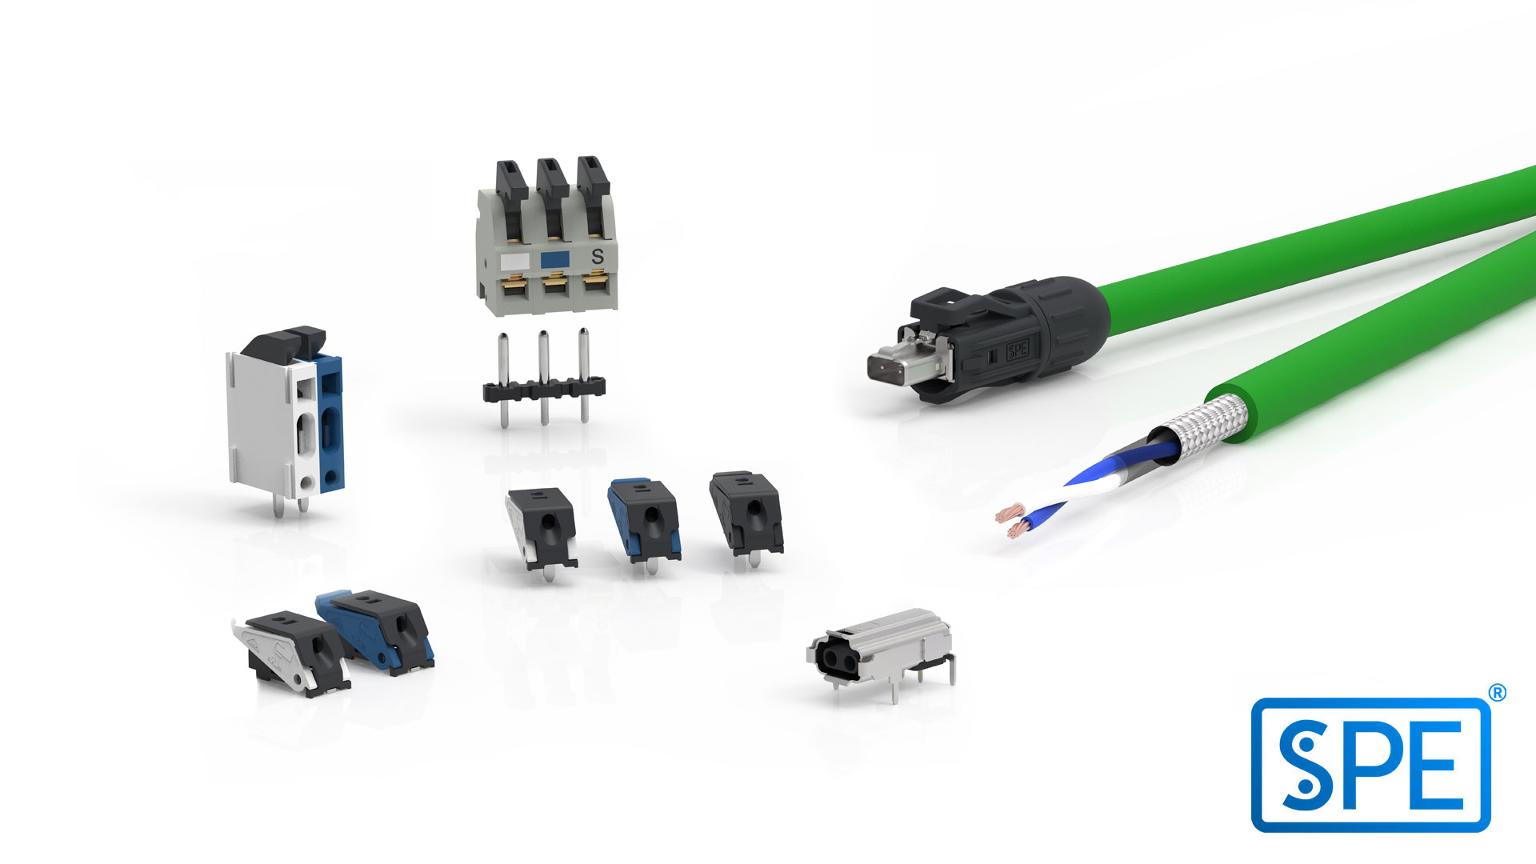 Single Pair Ethernet et le réseau de partenaires industriels SPE